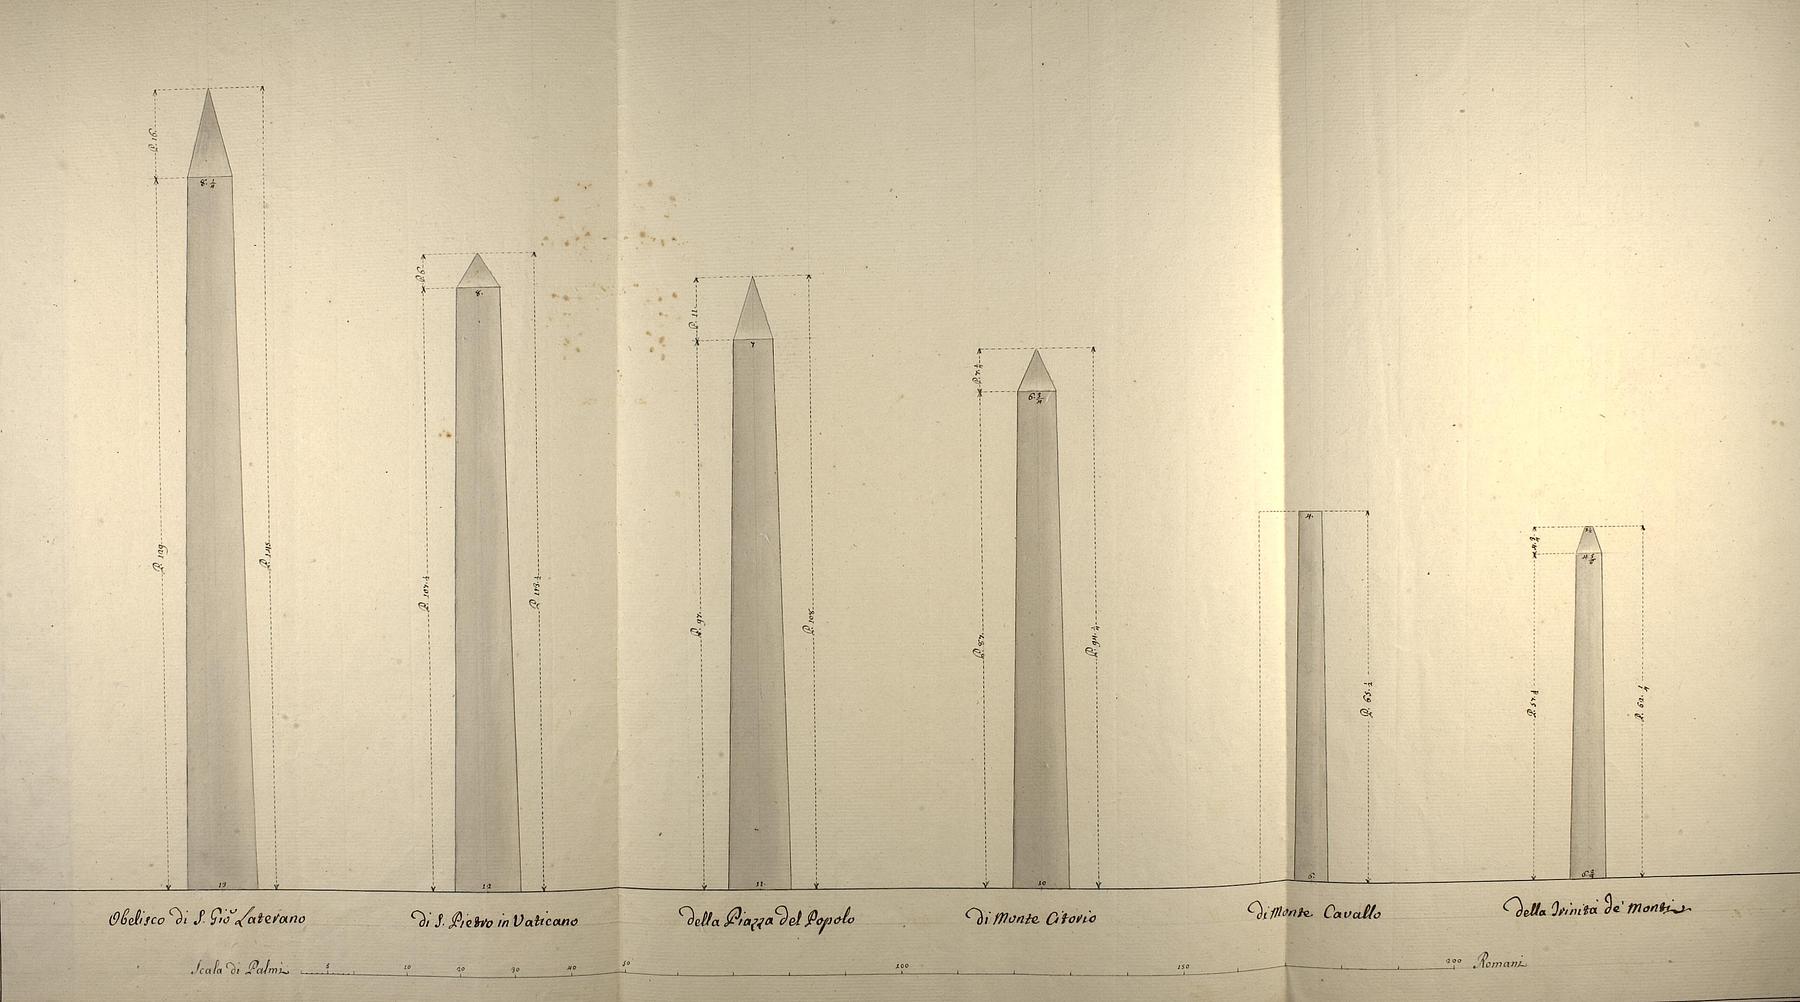 Seks obelisker, opstalt, D1158